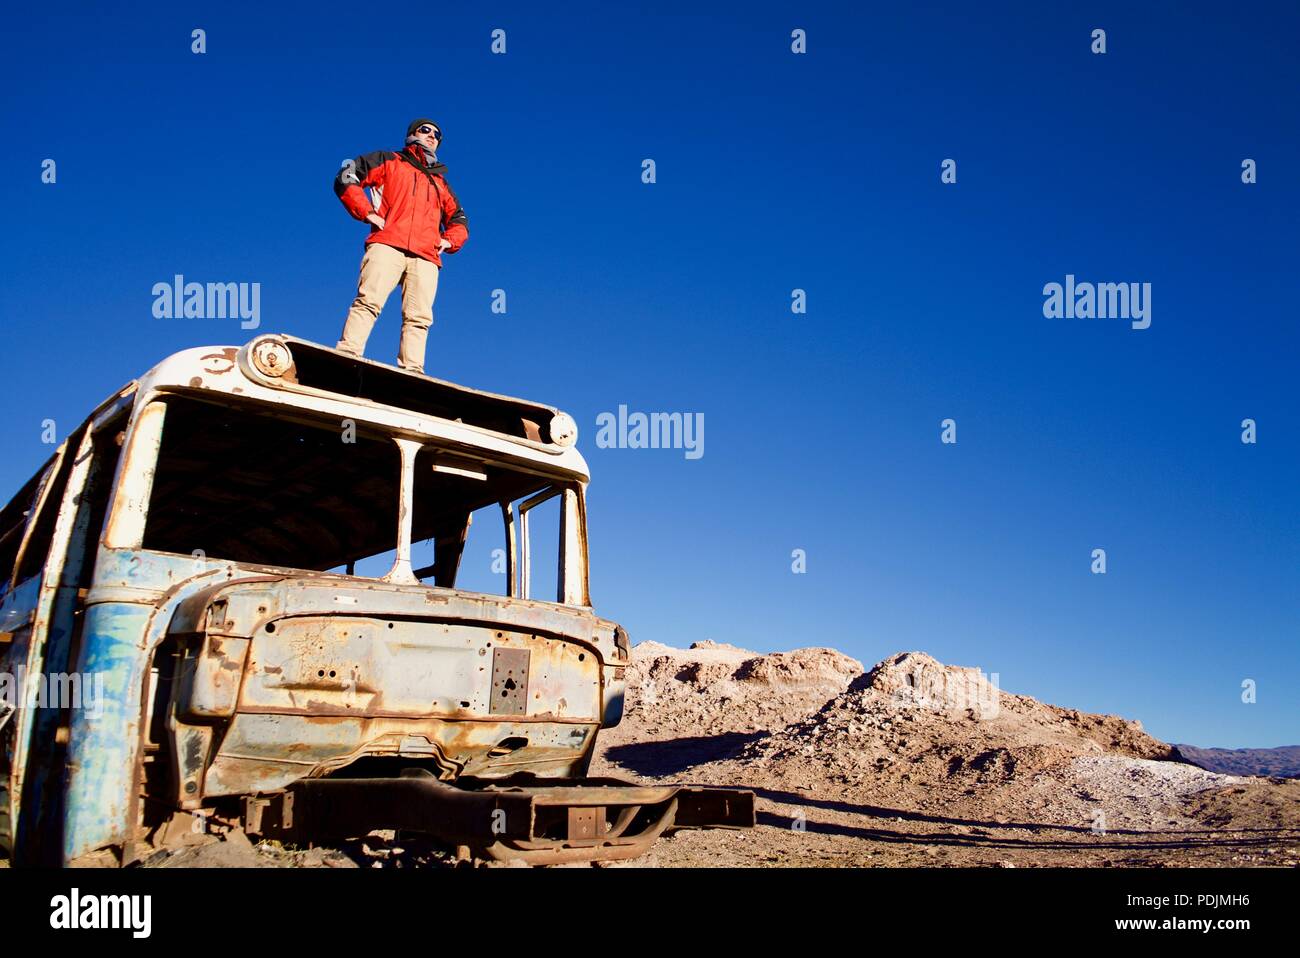 Bereit, sich neuen Herausforderungen zu stellen. Auf einem verlassenen Bus in der Atacama Wüste sehr früh am Morgen getroffen Stockfoto